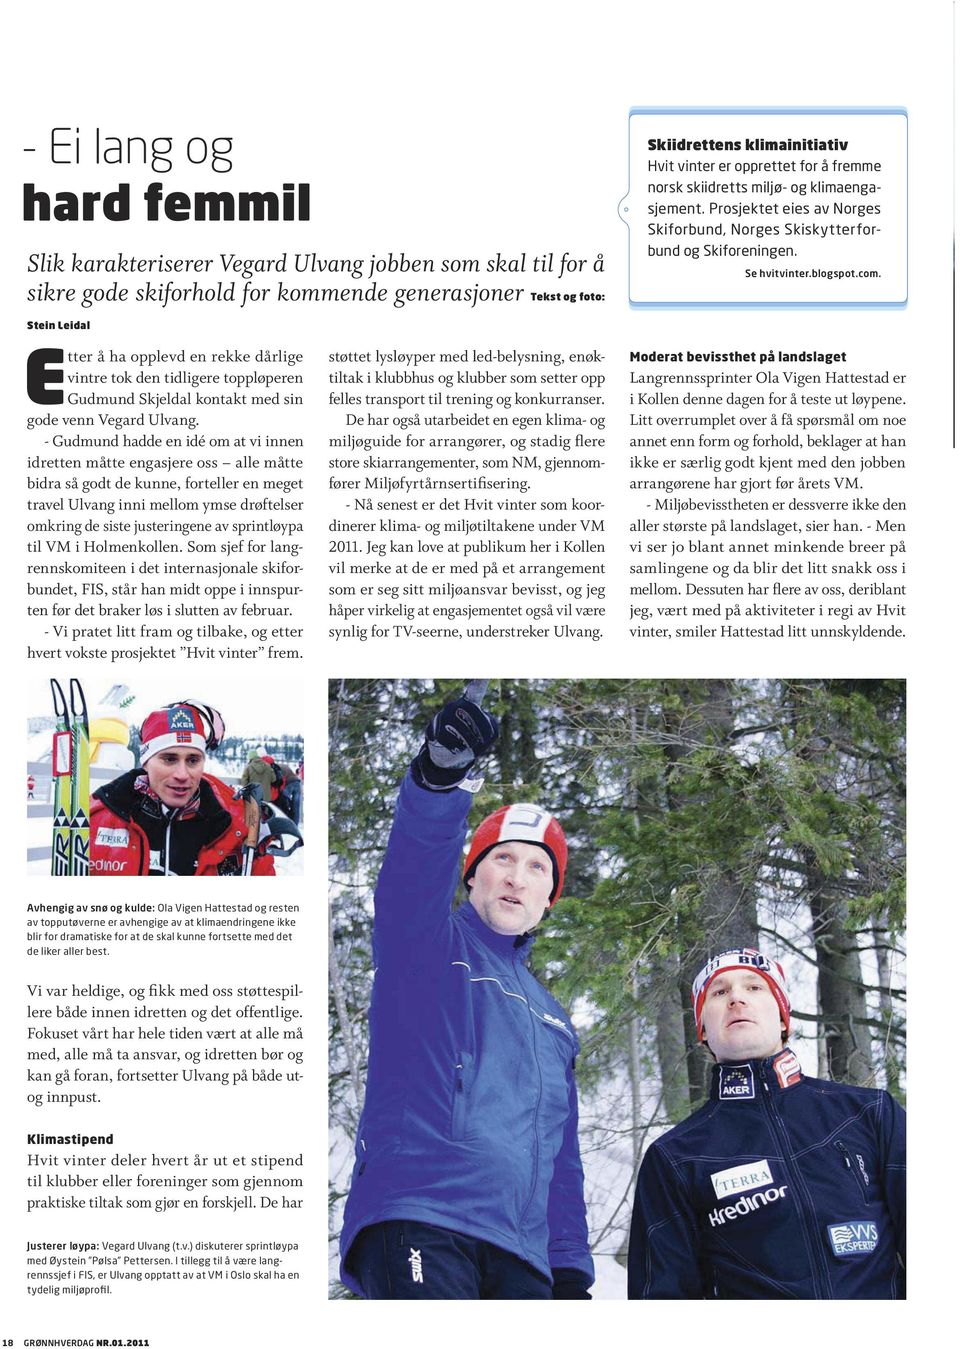 Stein eidal tter å ha opplevd en rekke dårlige vintre tok den tidligere toppløperen Gudmund Skjeldal kontakt med sin gode venn egard Ulvang.